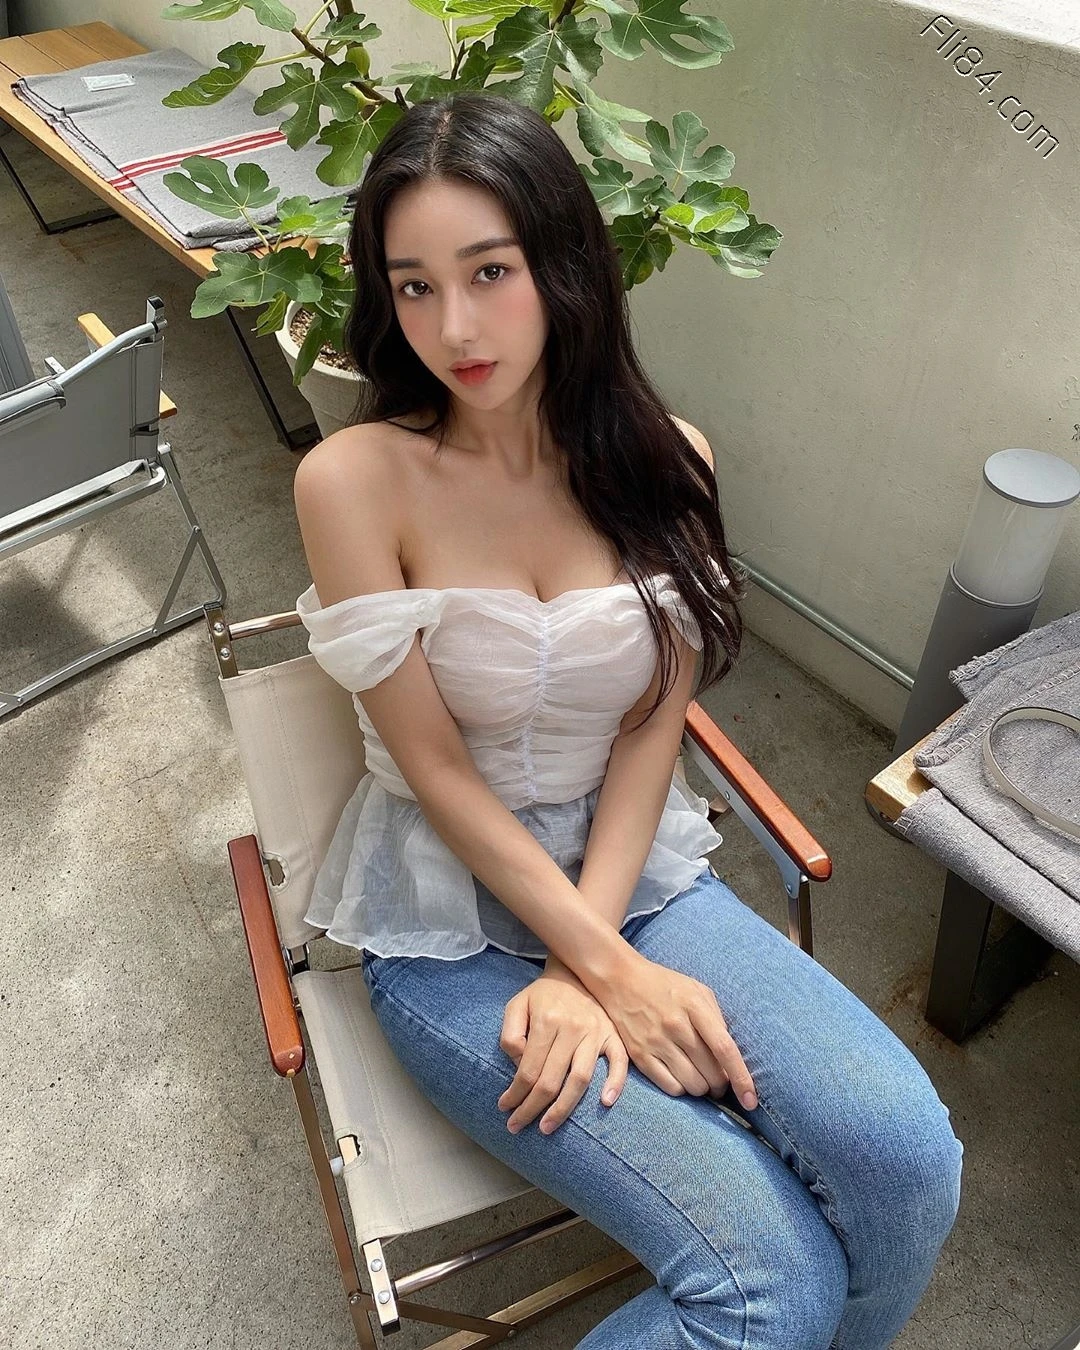 南韩内衣模特@Audrey 性感比基尼大秀美胸 - 全文 美女写真 热图129